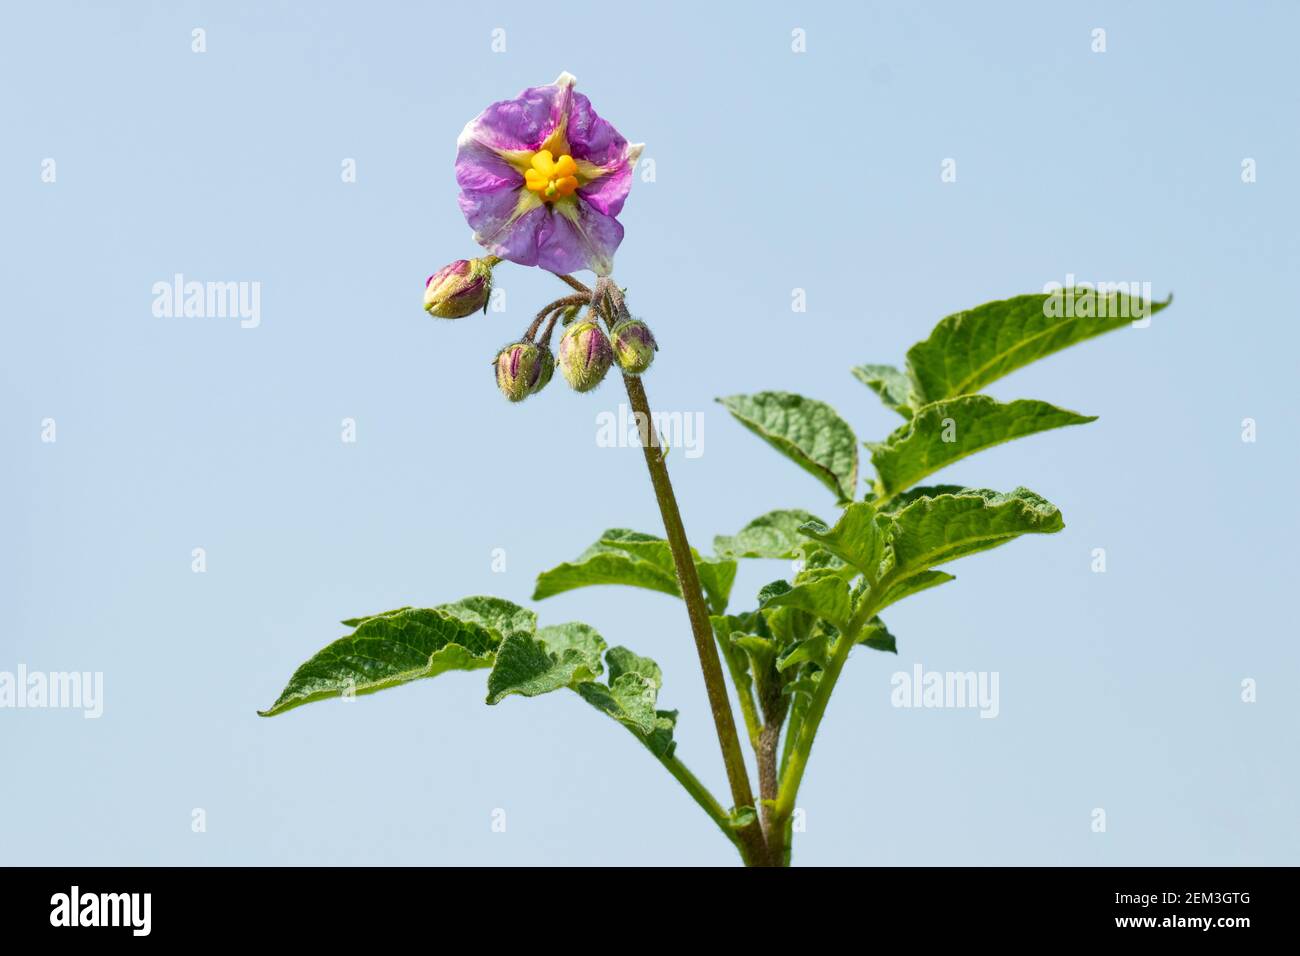 Fiori di patata come una pianta di patata crescente si avvicina alla maturità, produce i fiori. Incidentalmente, alcuni di questi fiori sono realmente molto attraenti Foto Stock